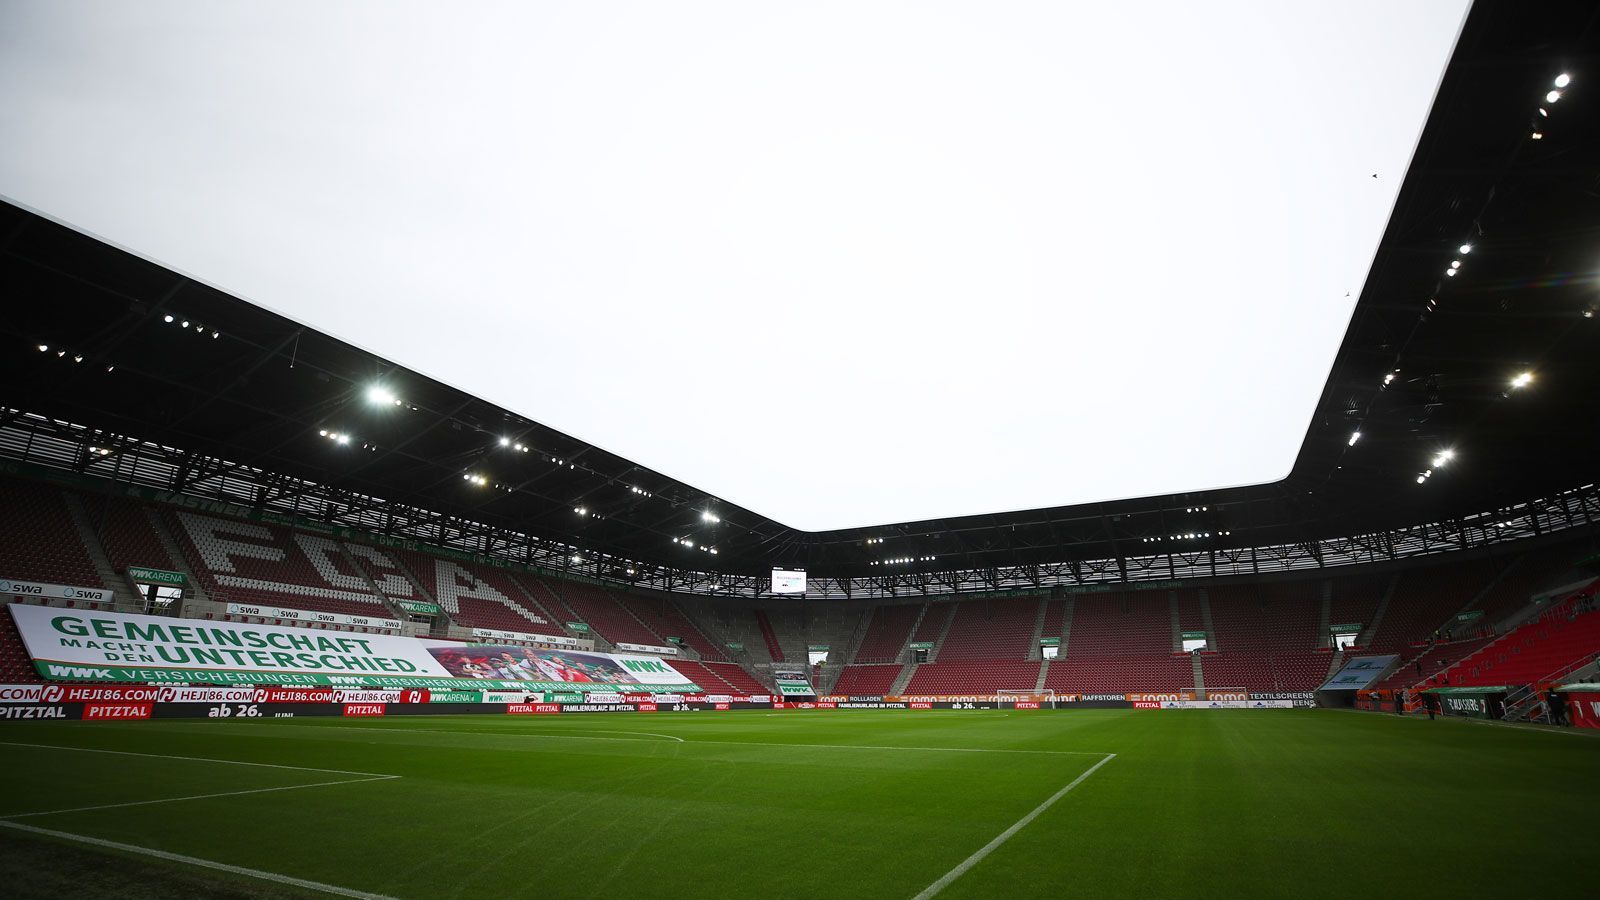 
                <strong>FC Augsburg</strong><br>
                Stadion: WWK Arena (30.660 Plätze) - Zugelassene Fans am 4. Spieltag: 0* - Gegner: RB Leipzig - *Die Stadt hatte aufgrund der steigenden Corona-Zahlen jegliche Zuschauer für das Spiel gegen RB Leipzig verboten.
              